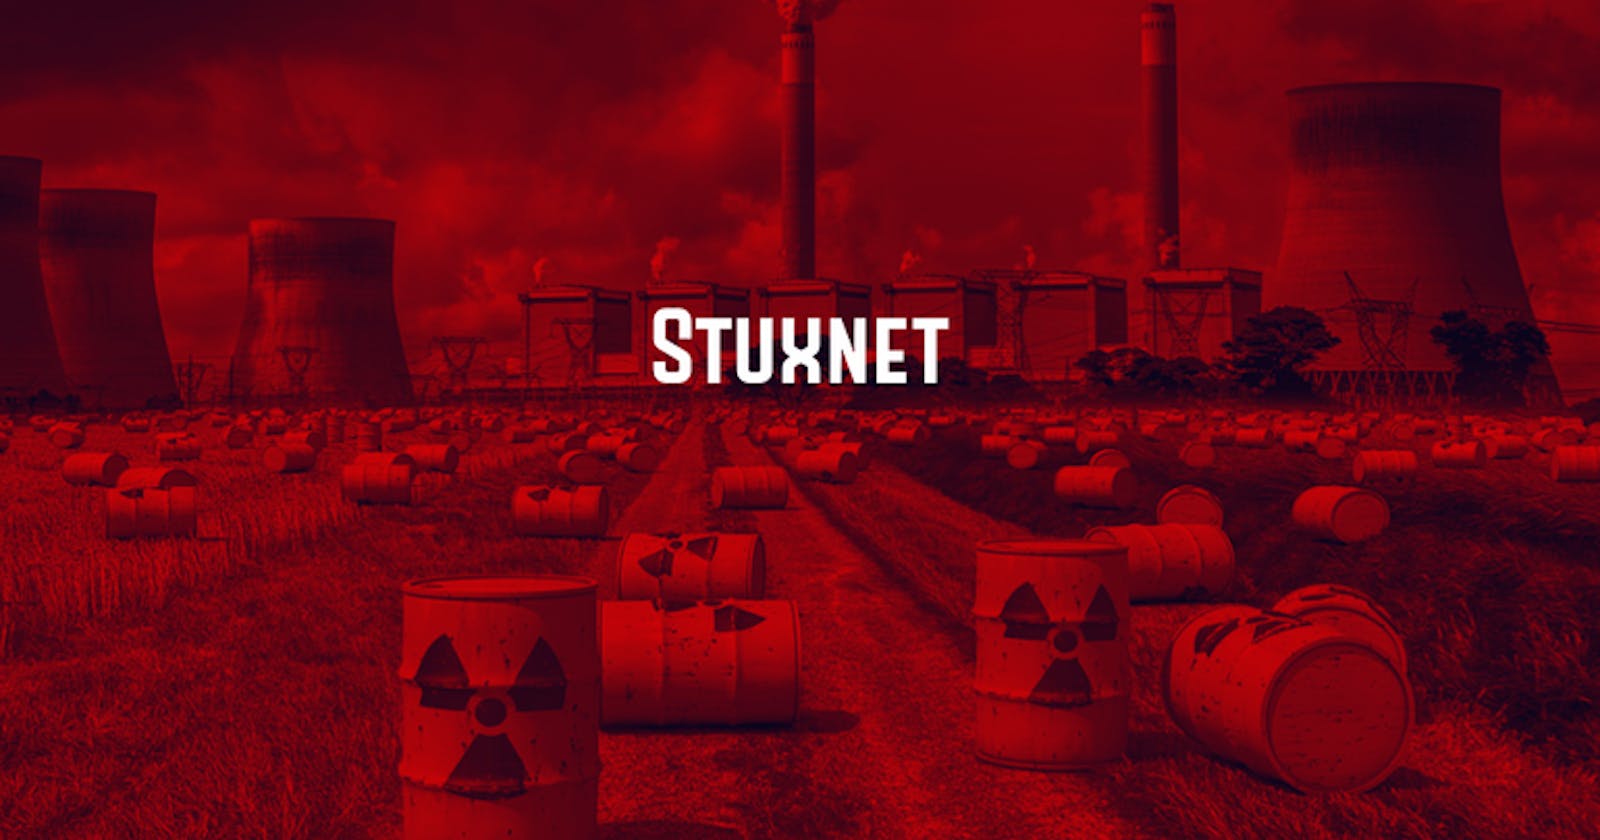 Catatan tentang Stuxnet (Bagian 2: Instalasi hingga sabotase)